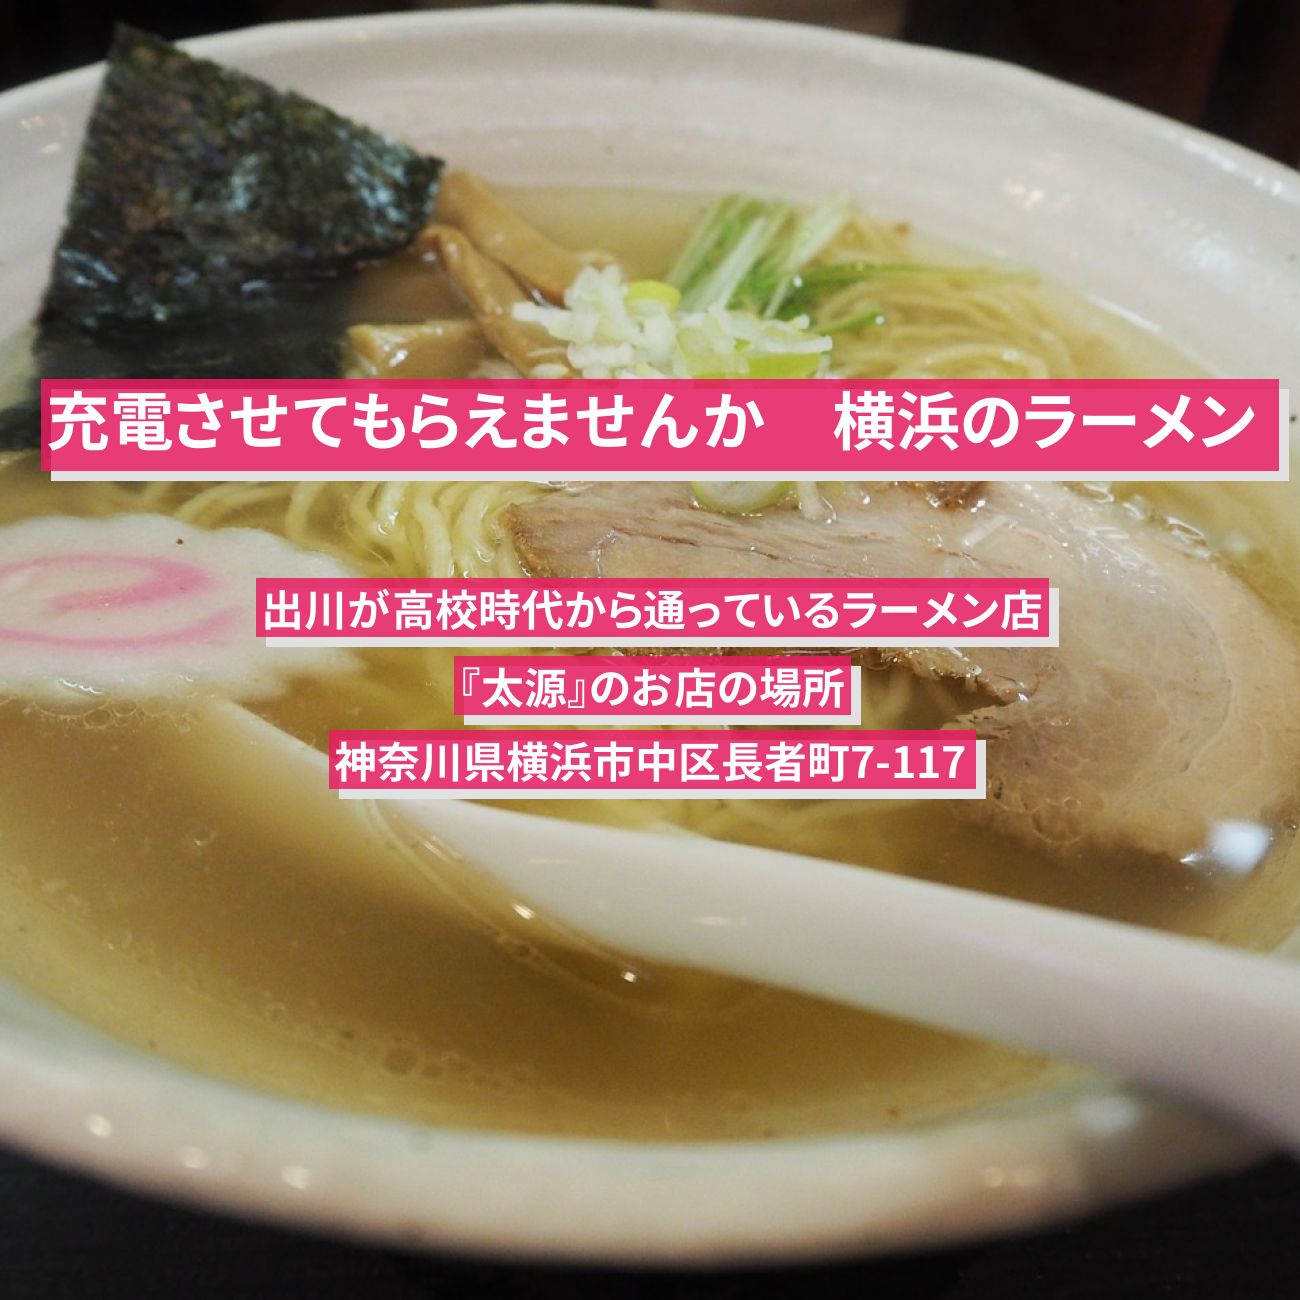 【充電させてもらえませんか】ニンニクラーメン・茶碗カレー『太源』横浜のお店の場所